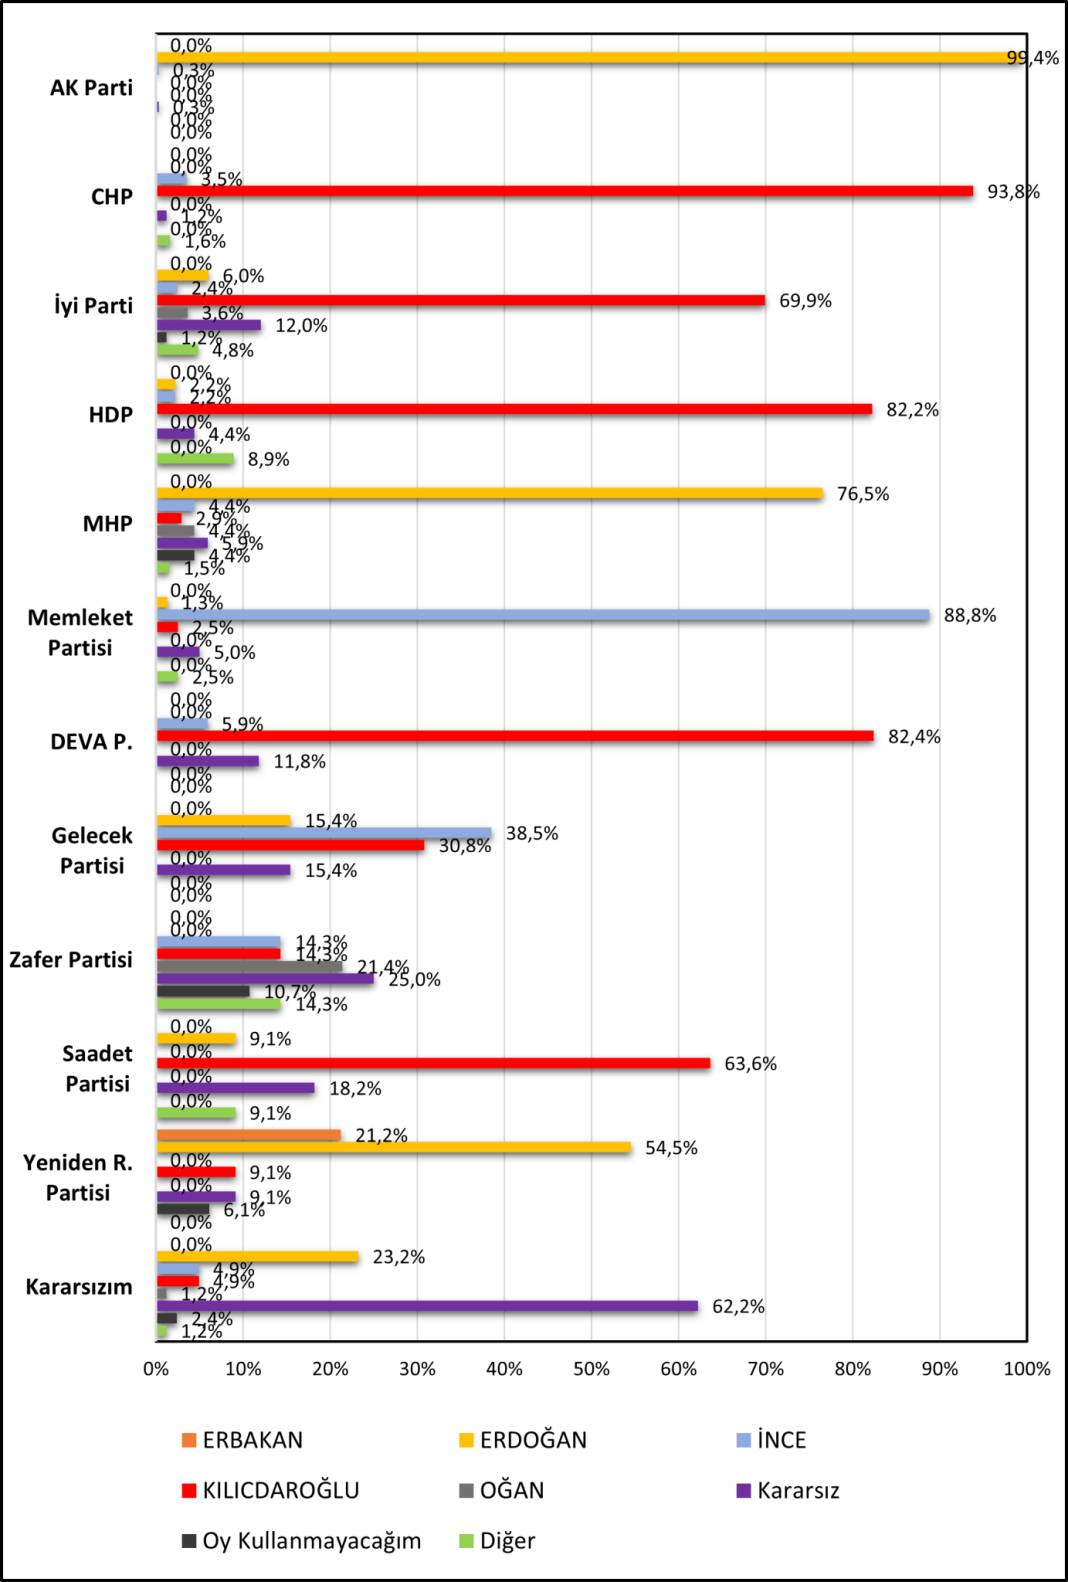 Son anket: Erdoğan ile Kılıçdaroğlu arasındaki fark yüzde 2,4, İnce'nin oyu yüzde 9,3 15